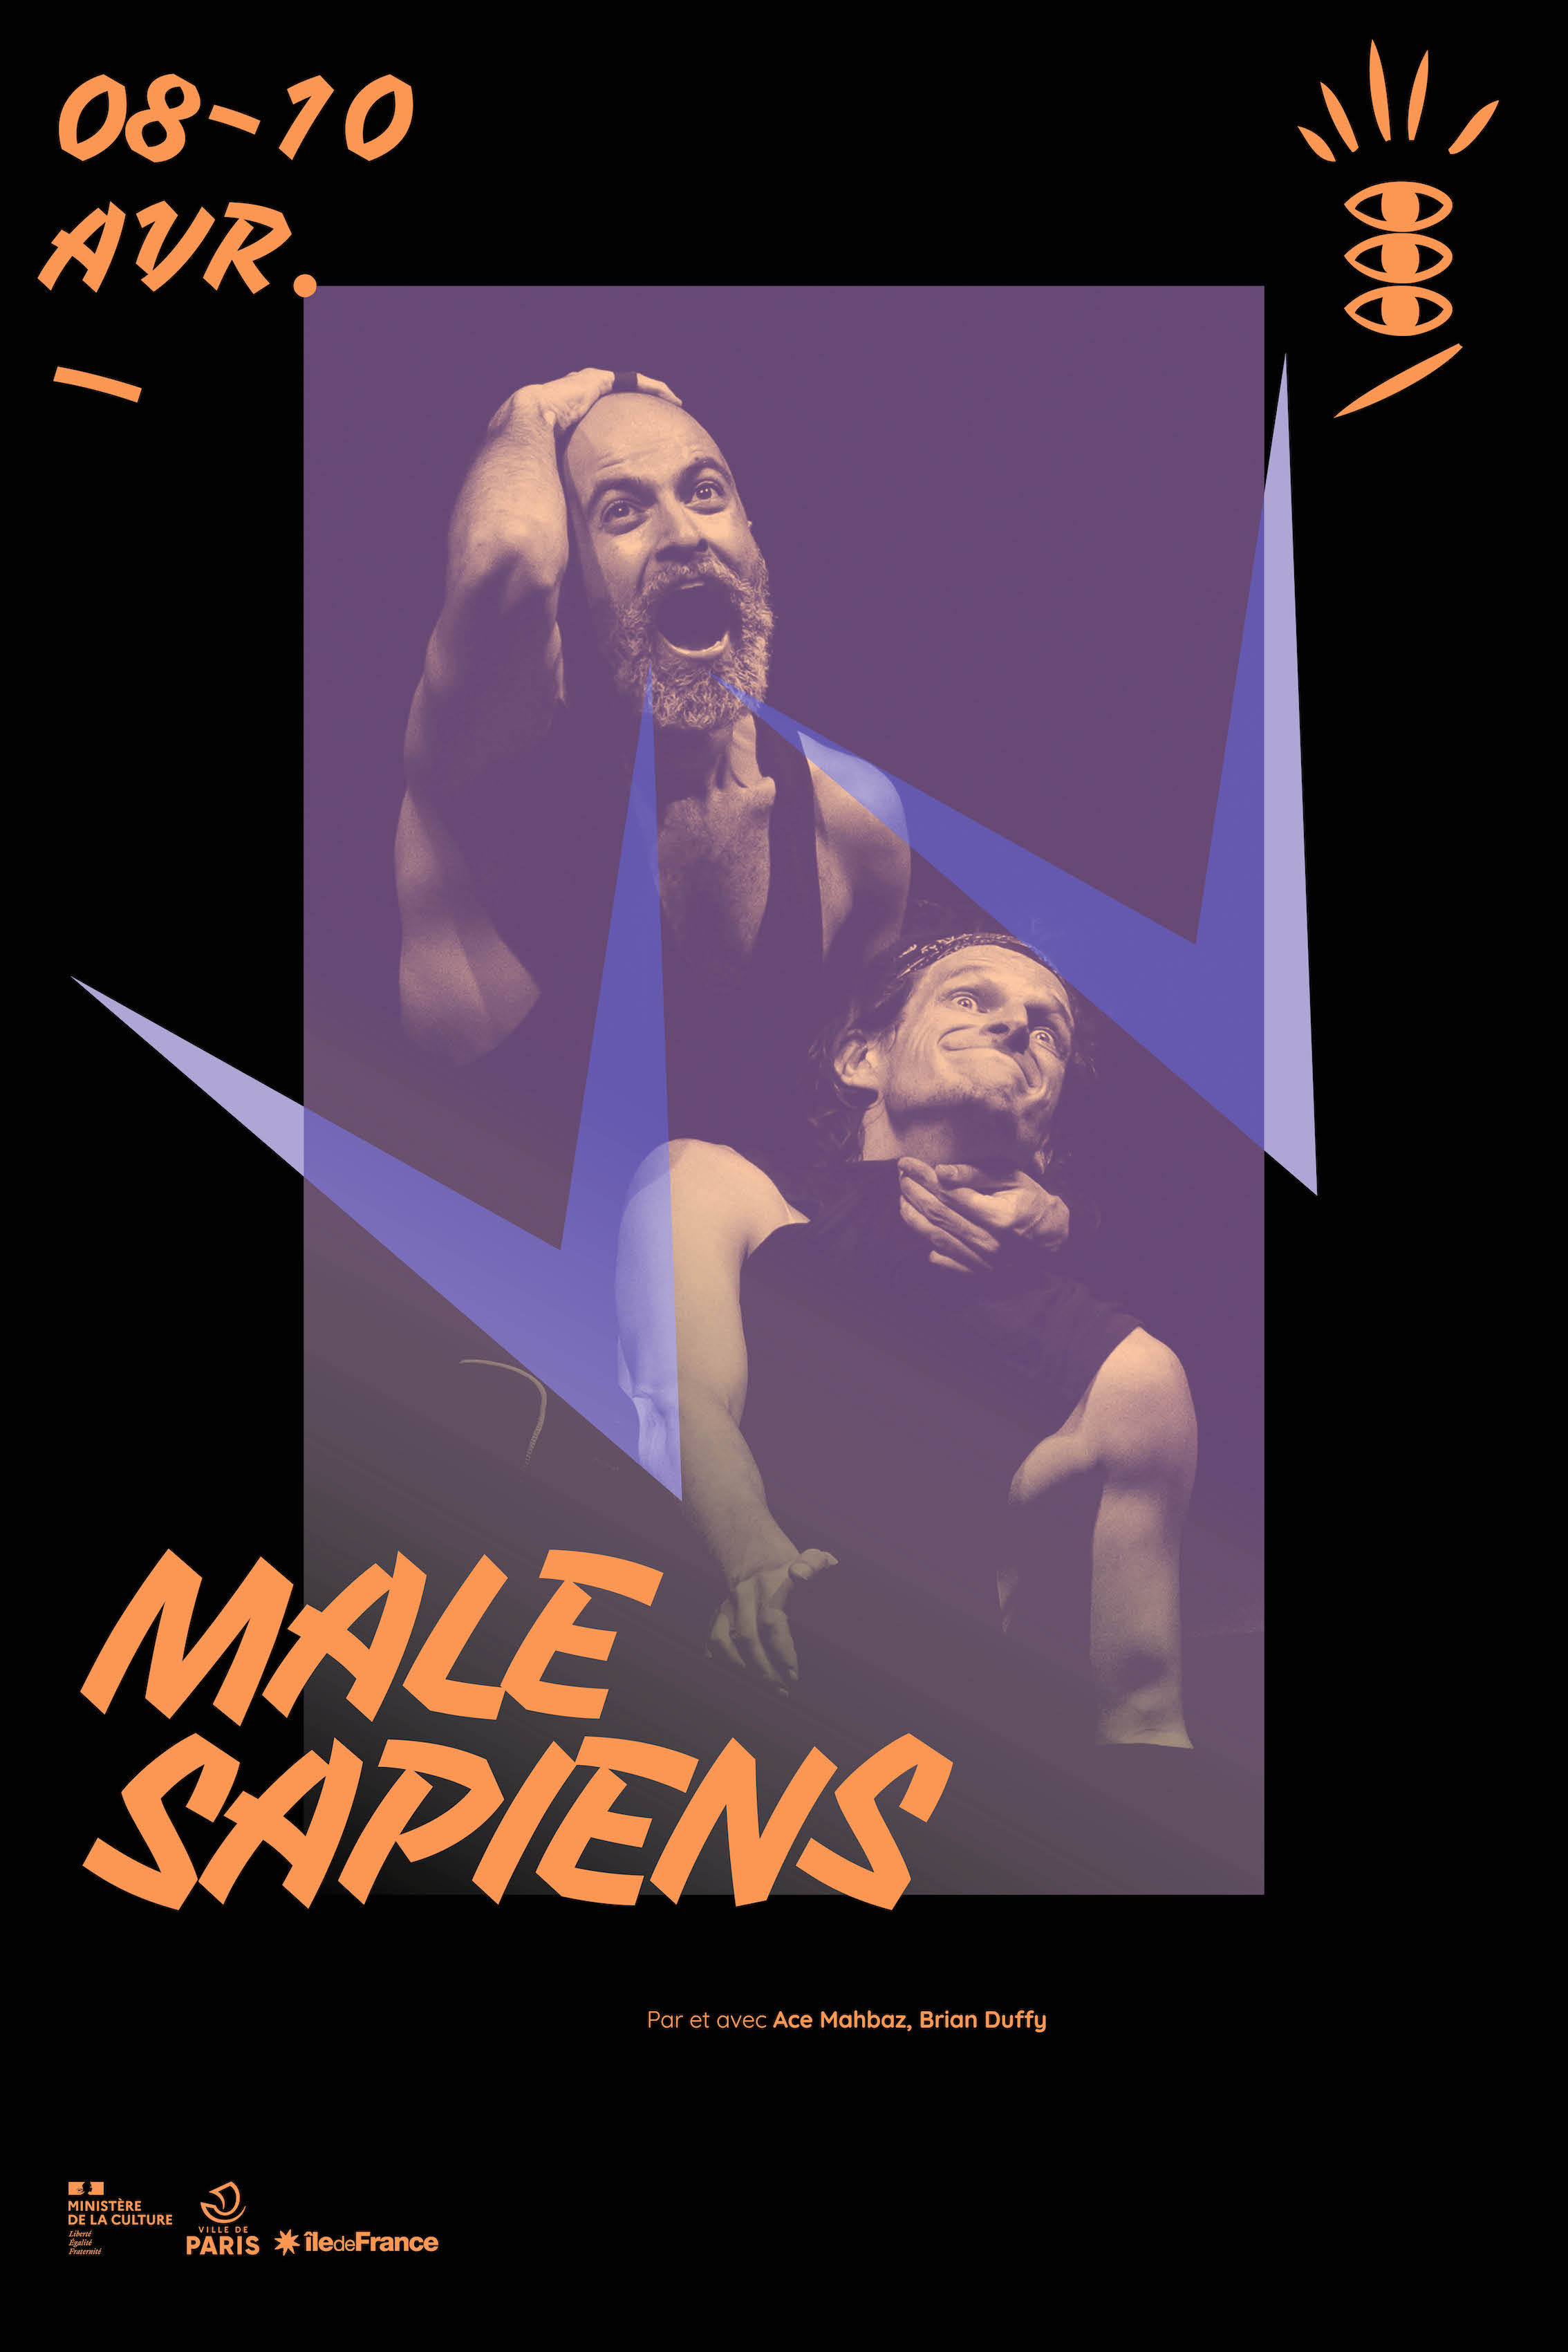 Male Sapiens